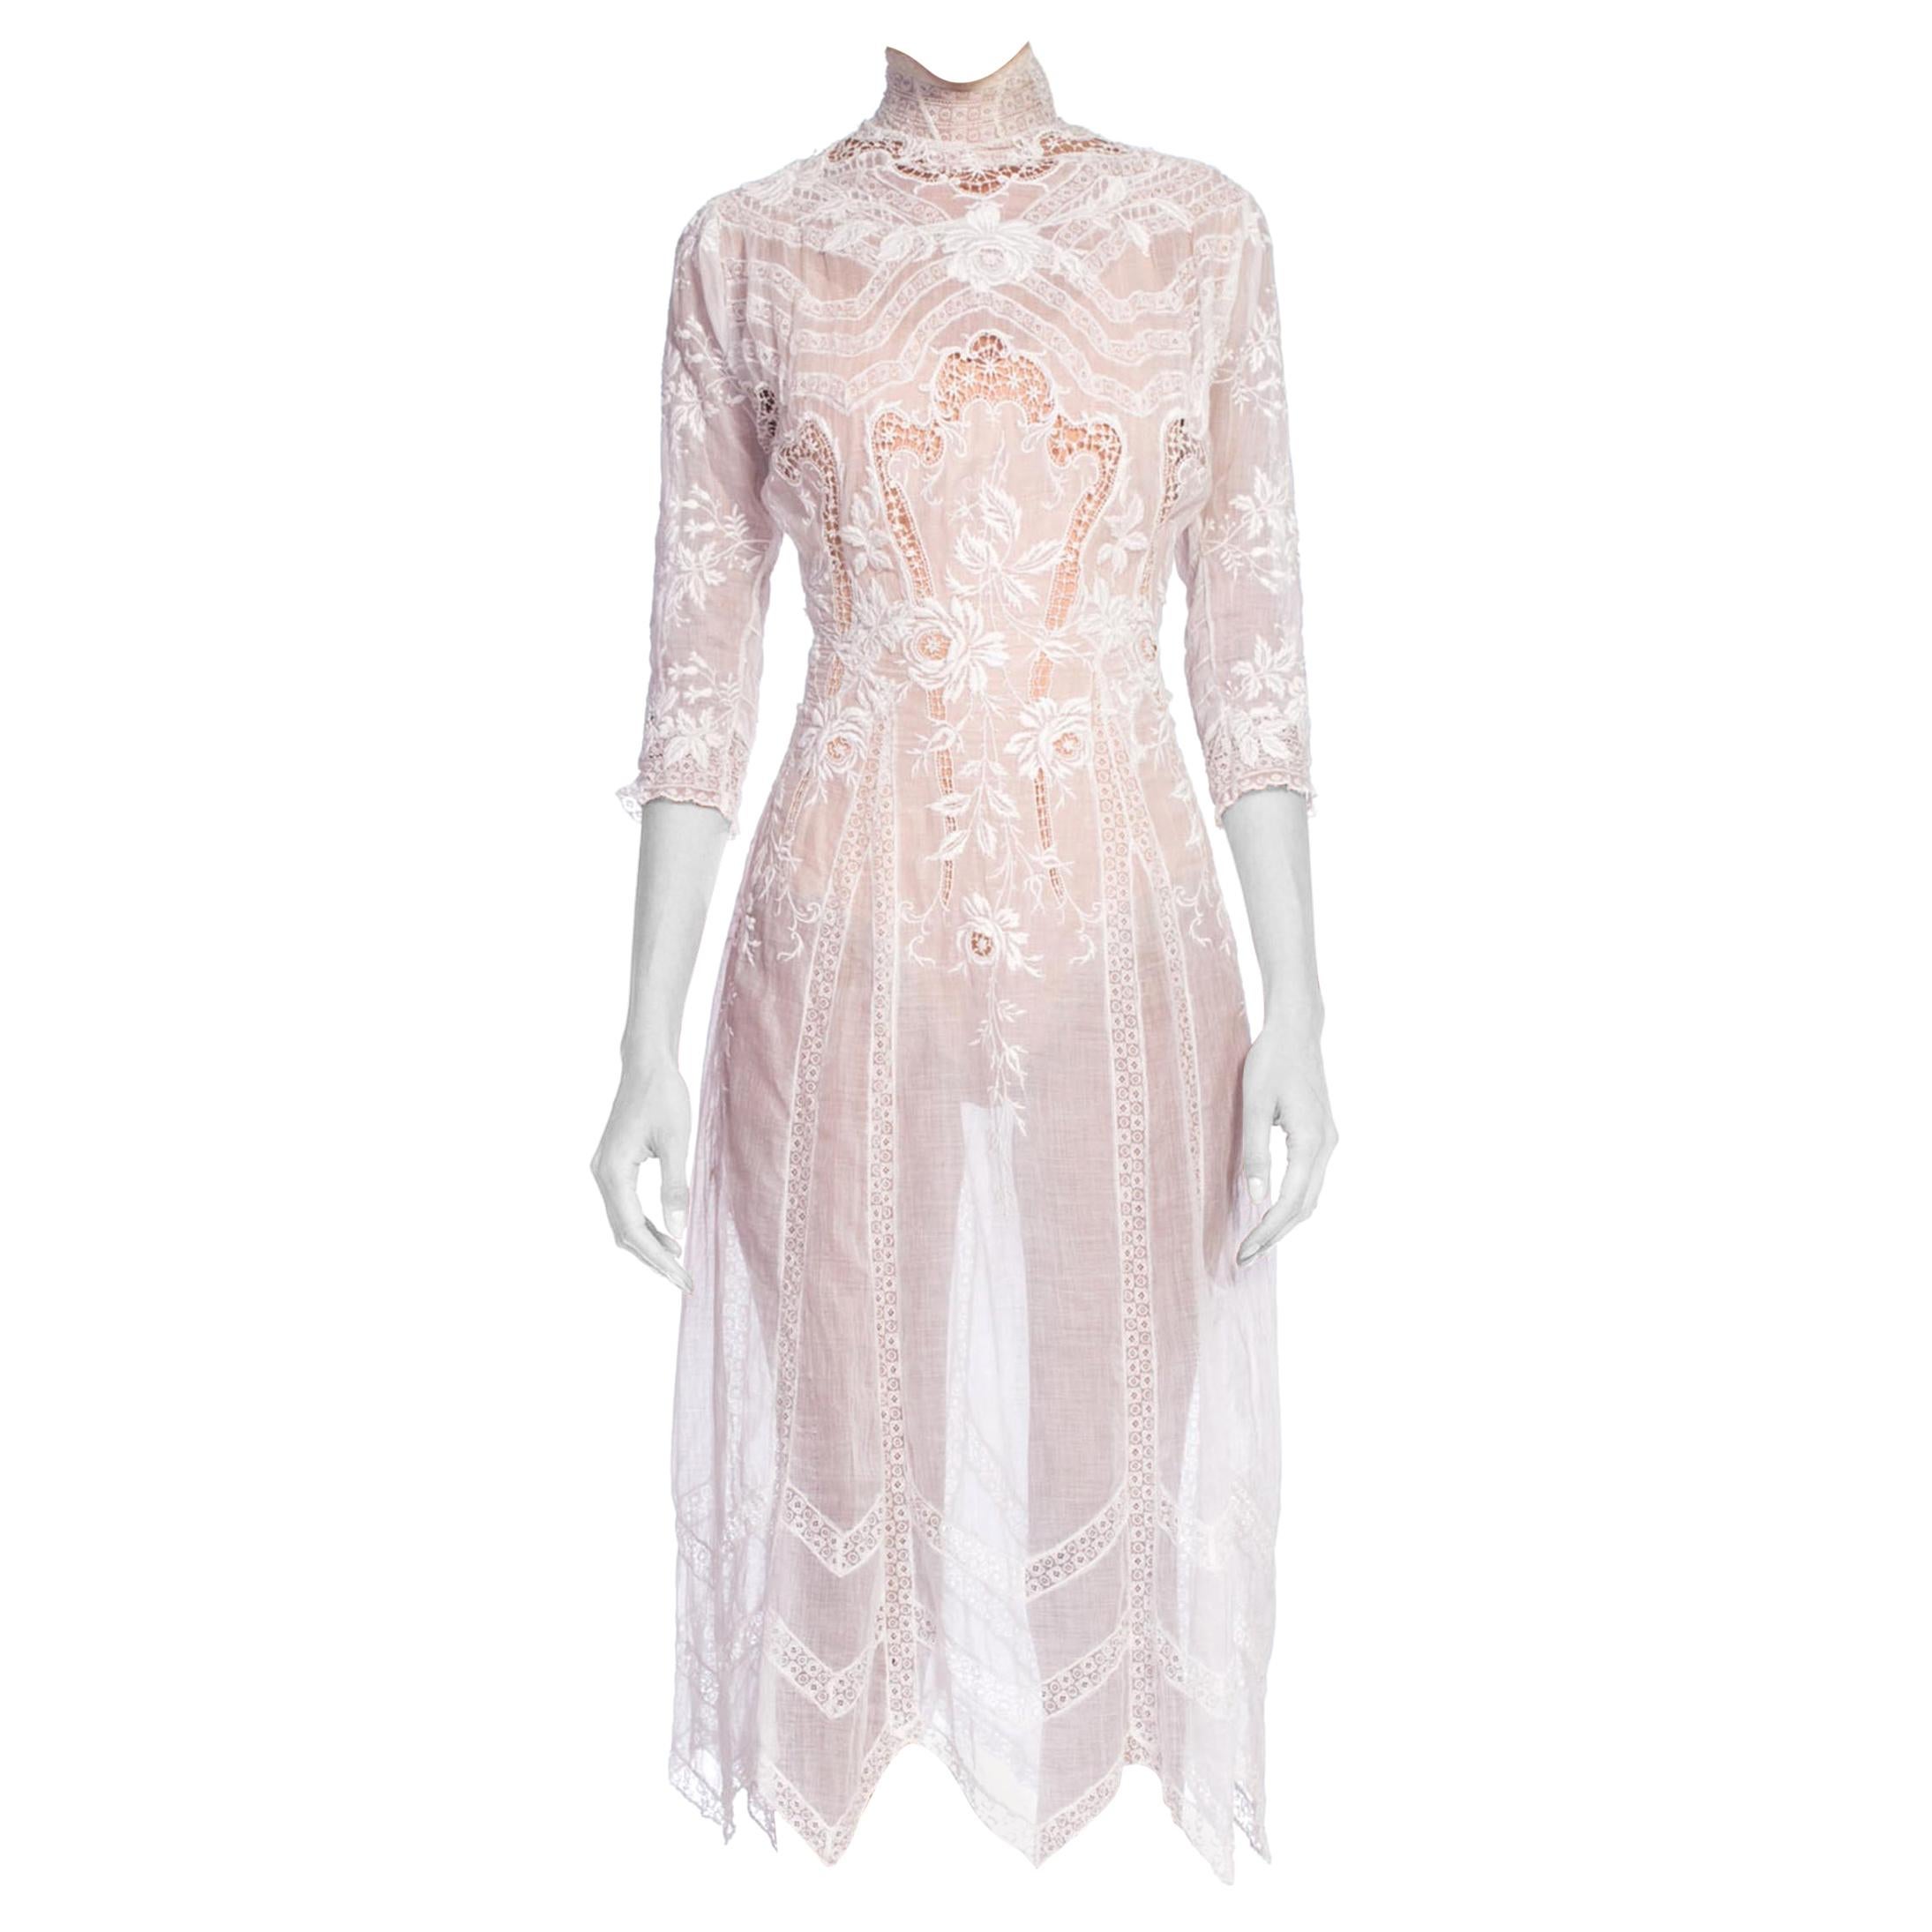 Exquisite Princess Line Belle Epoch Organic Cotton Voile + Lace Tea Dress 1890